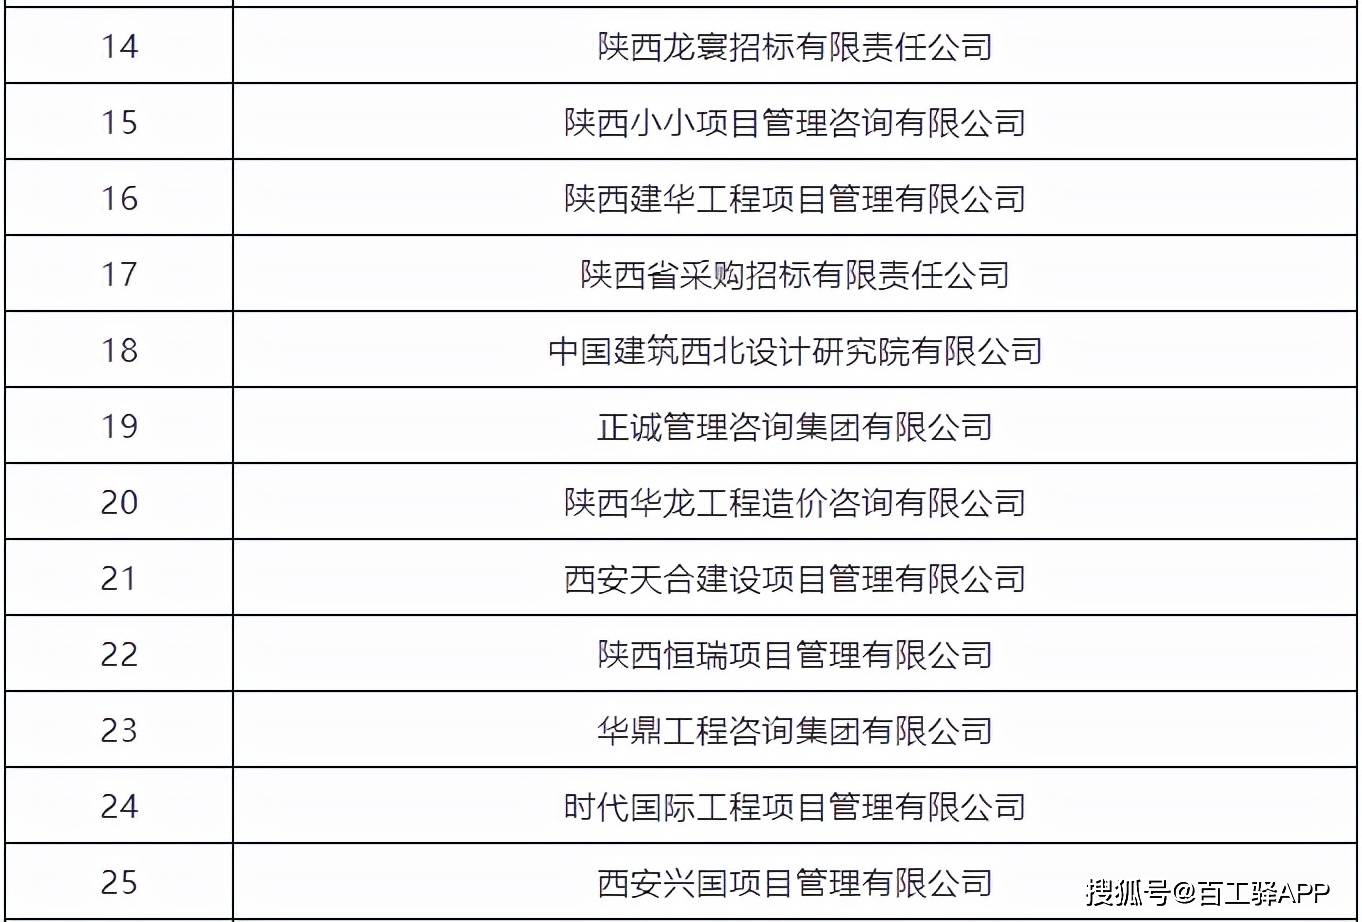 2021陕西省工程造价咨询企业哪家强 权威名单出来了